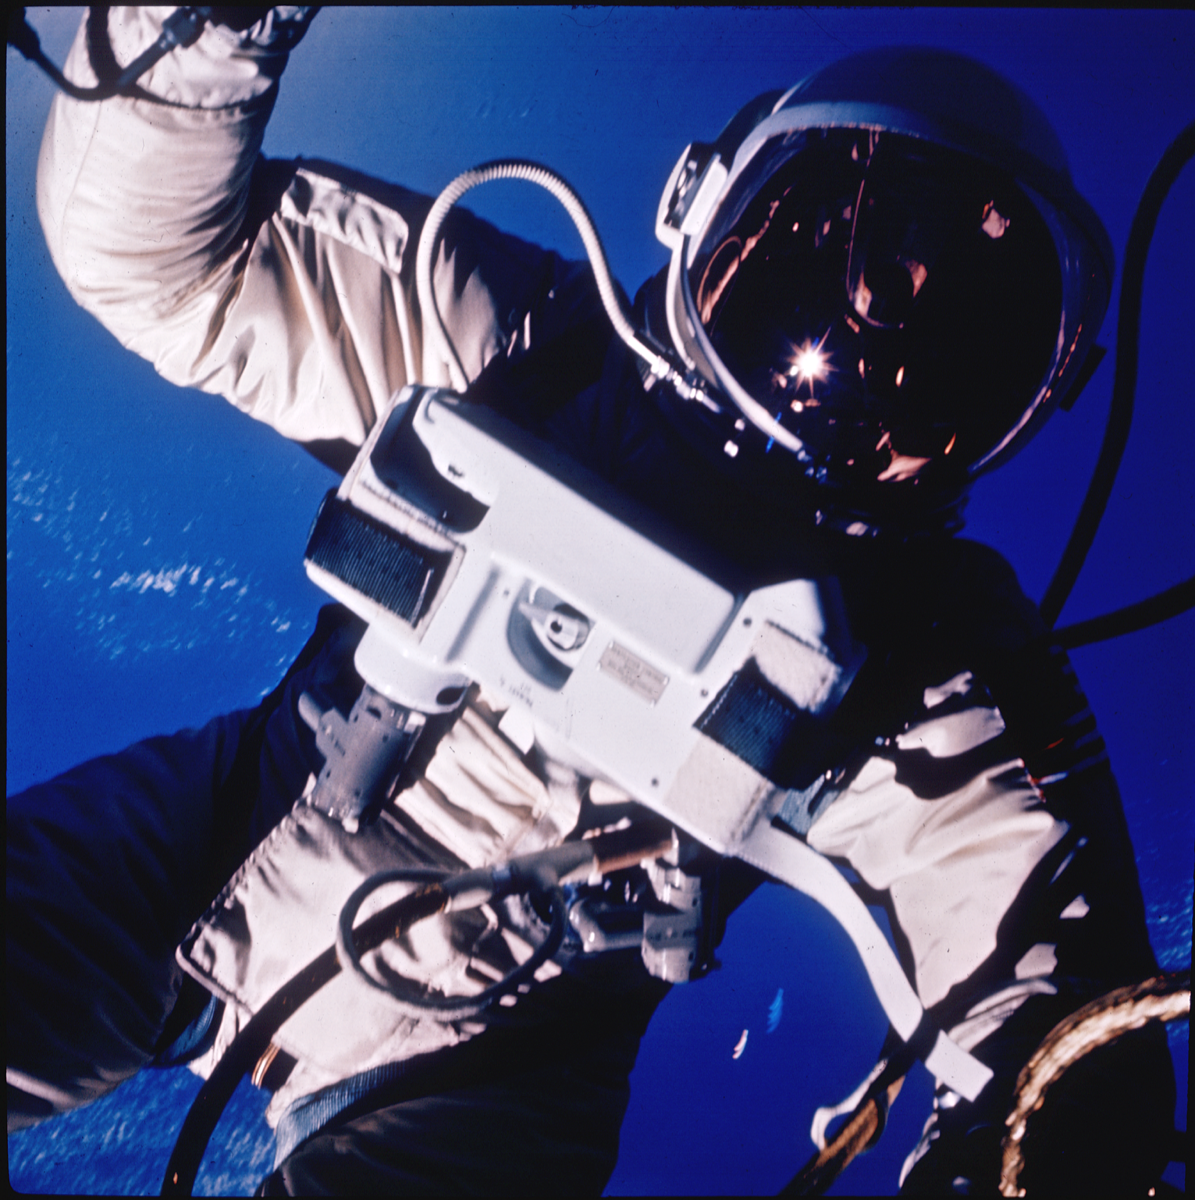 The First U.S. Spacewalk - Gemini 4